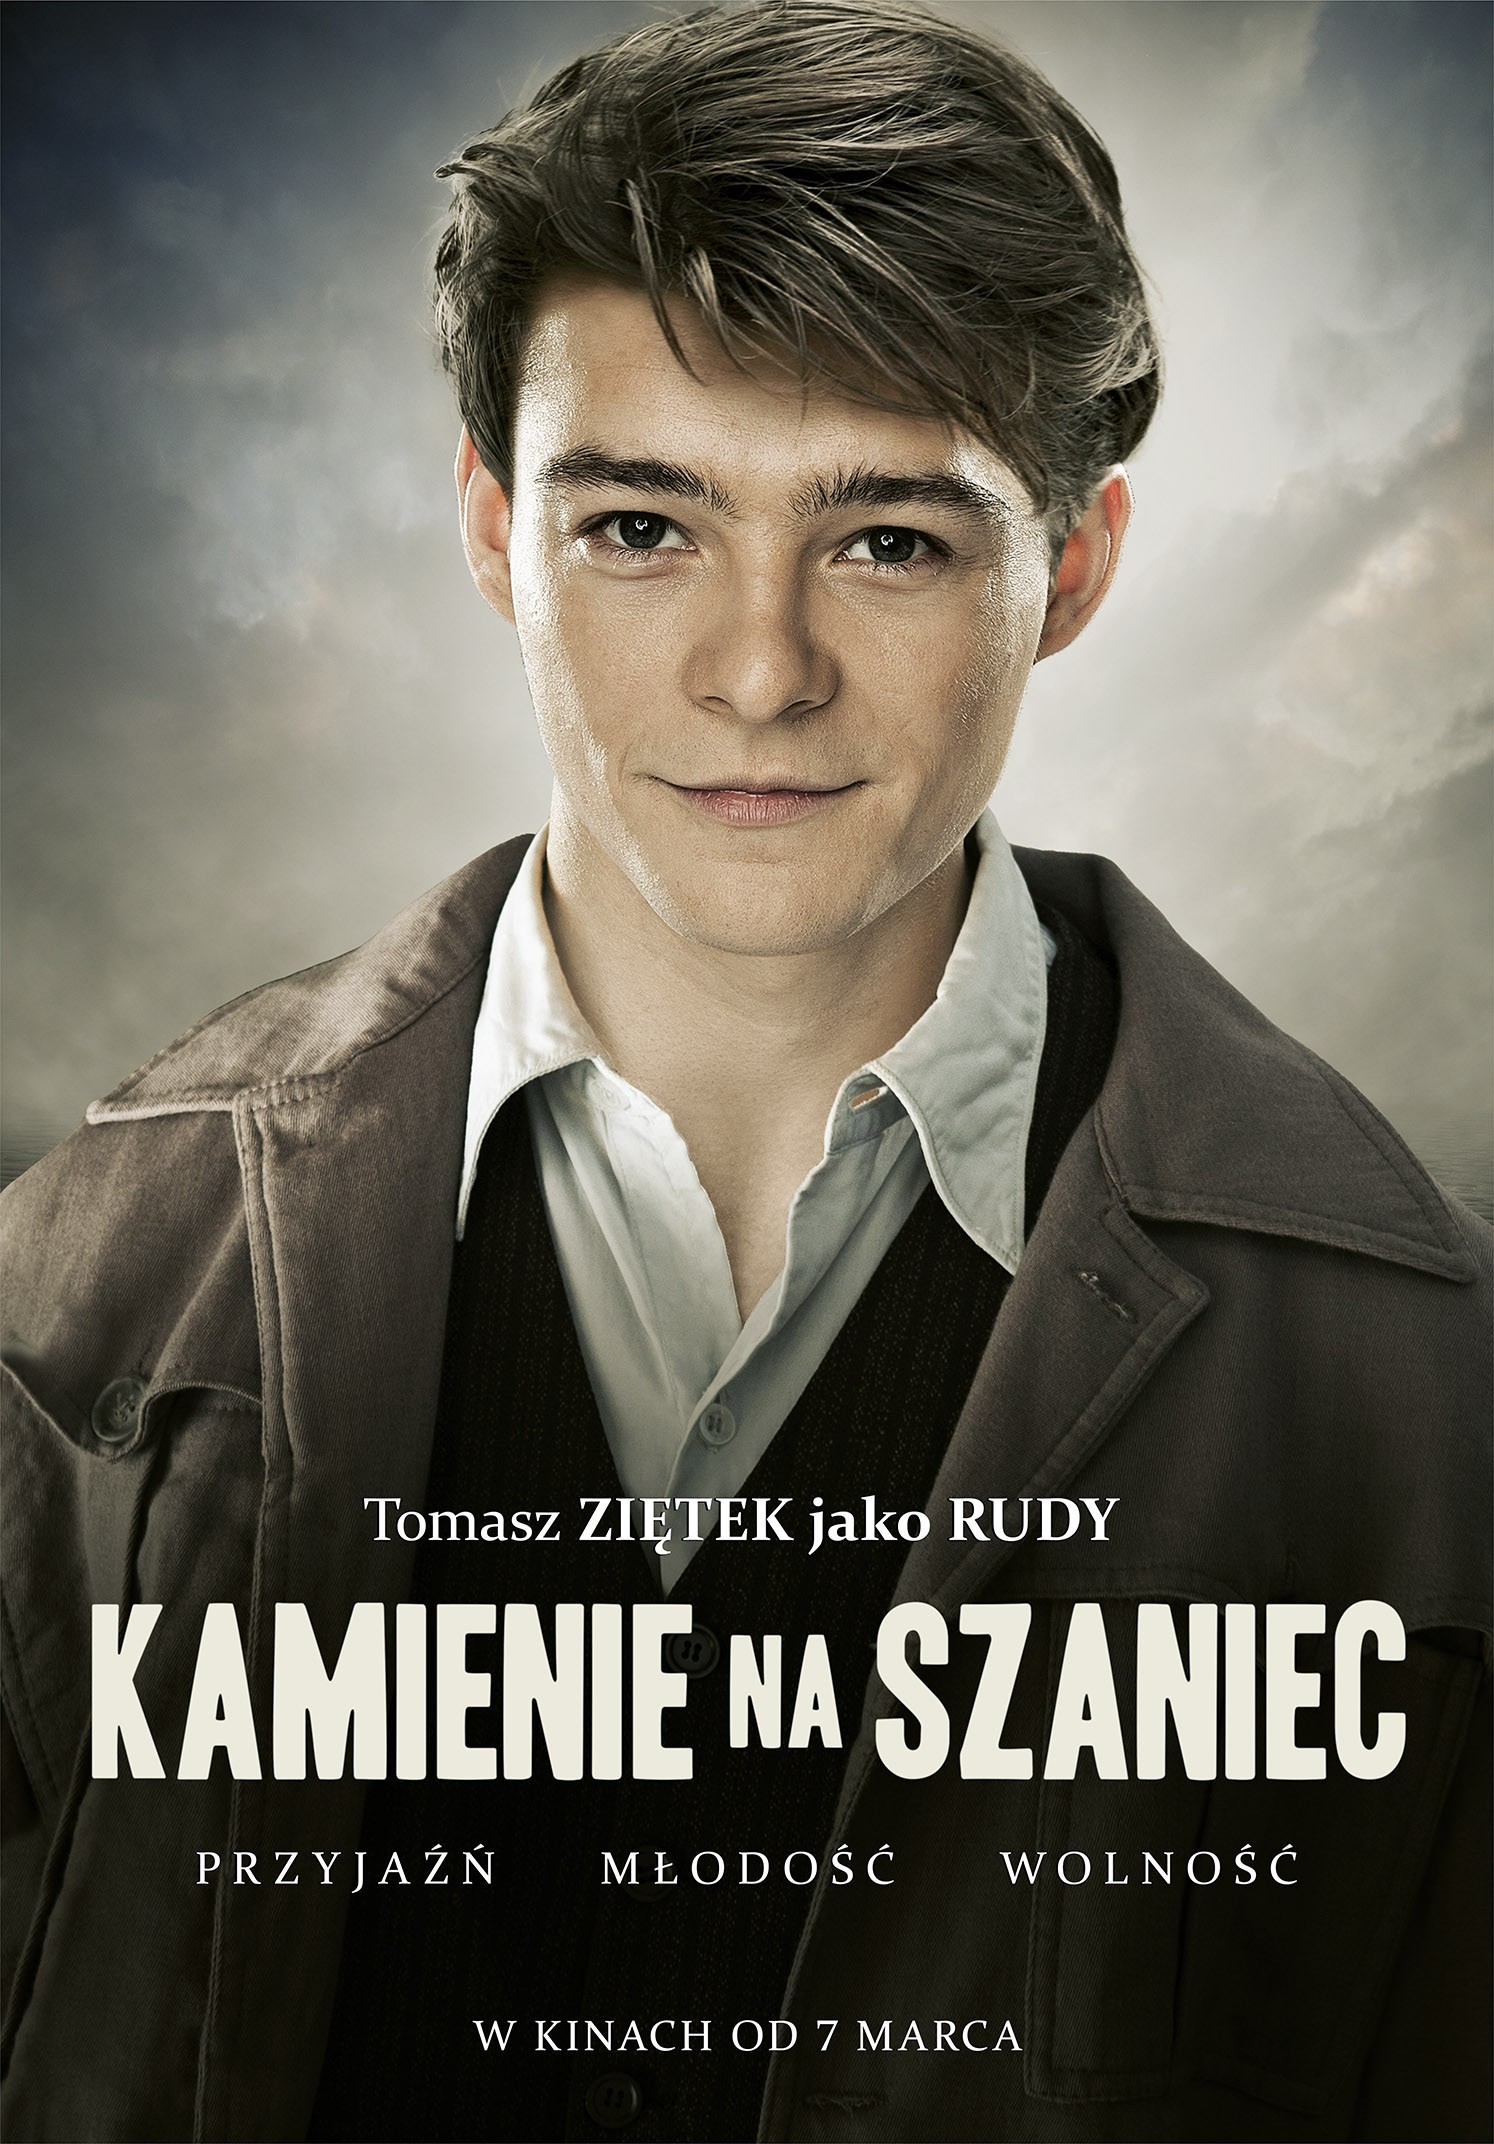 Mega Sized Movie Poster Image for Kamienie na szaniec (#1 of 8)